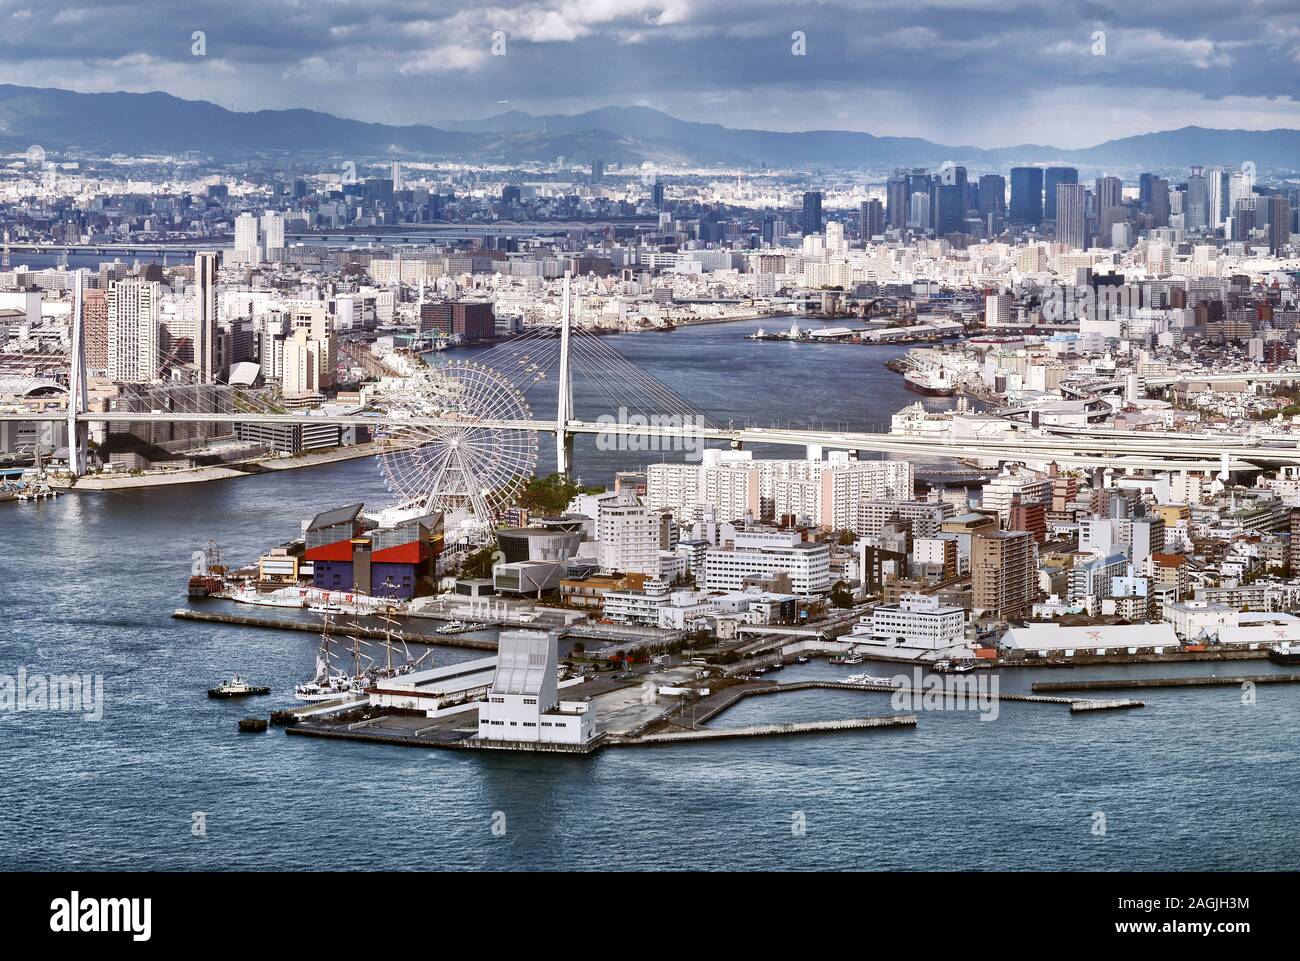 Vue aérienne de la ville d'Osaka Osaka Bay waterfront Tempozan pont sur Aji river et la Grande Roue à Minato ward, Minato-Ku, Osaka, Japon, 201 Banque D'Images